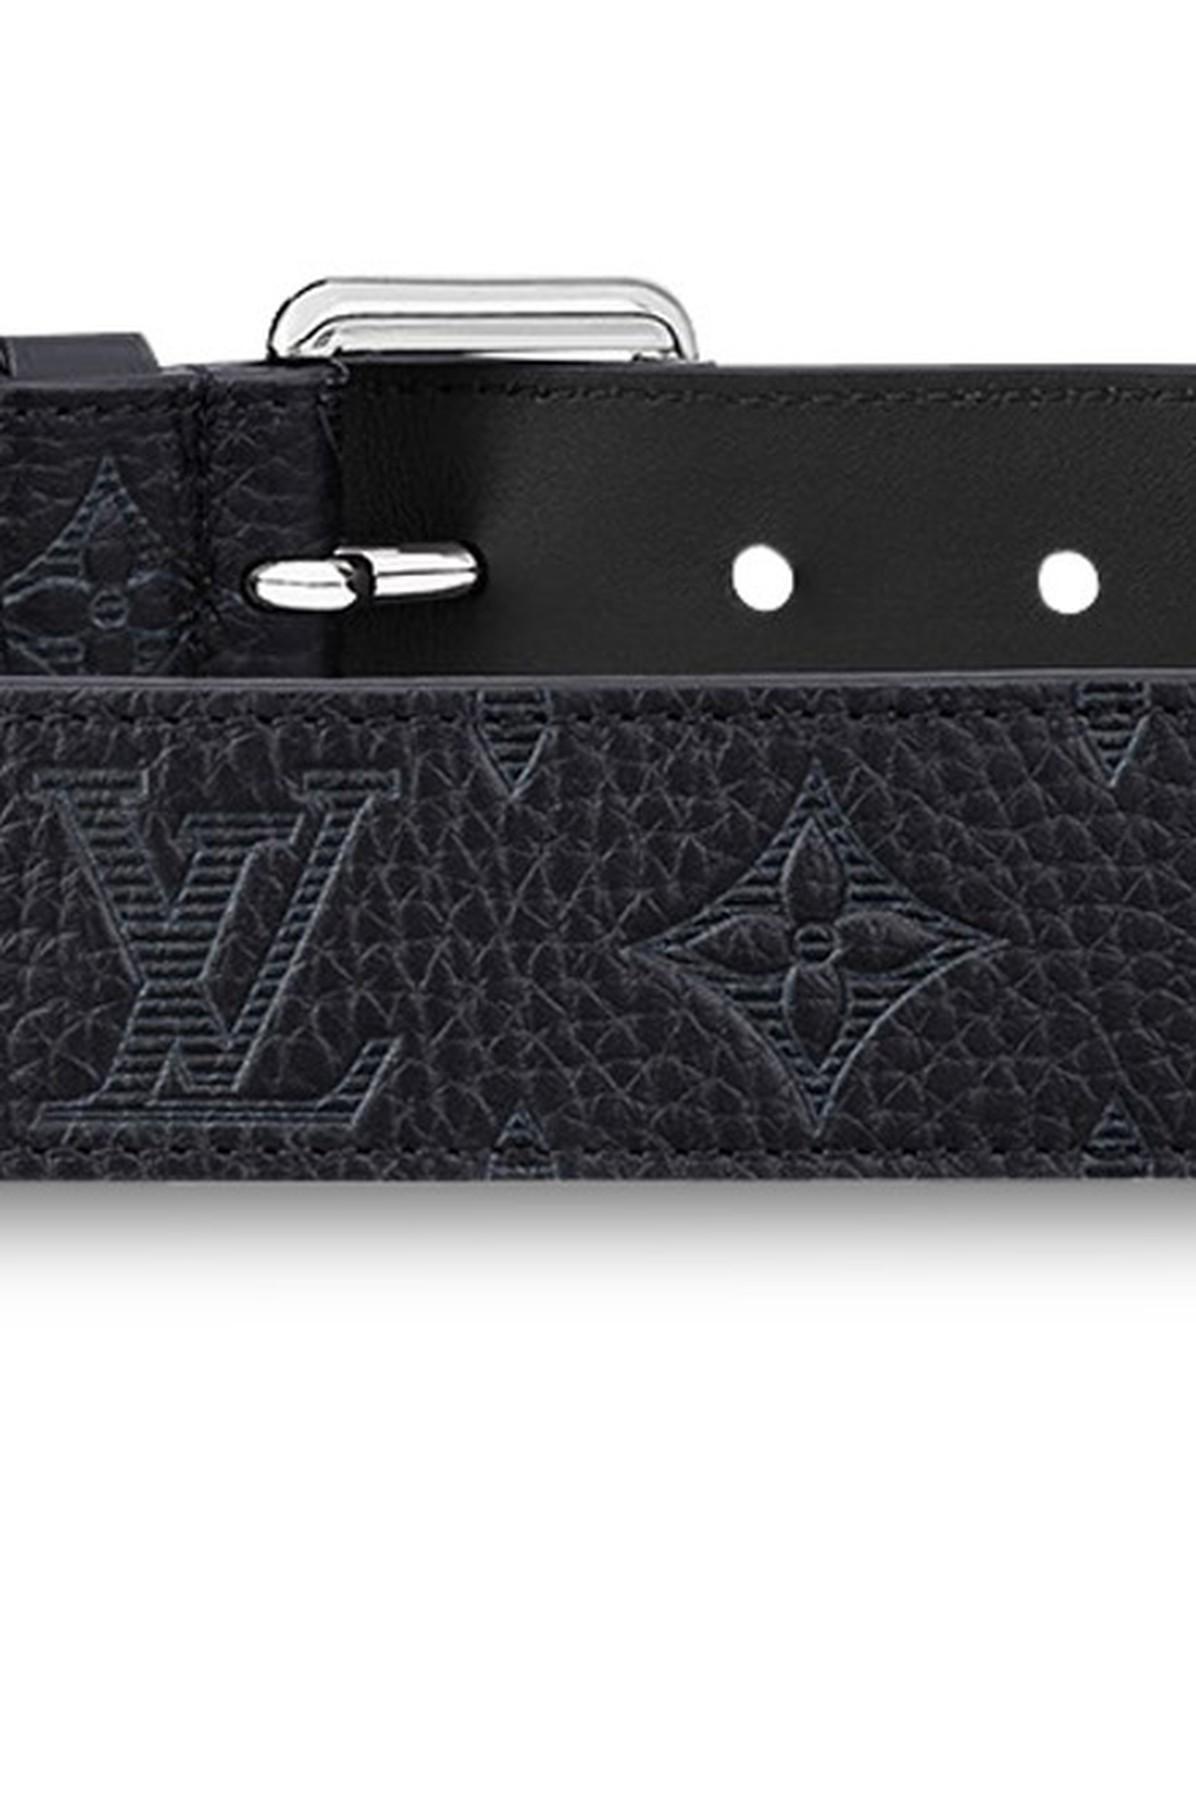 Louis Vuitton LV Signature Pocket Belt